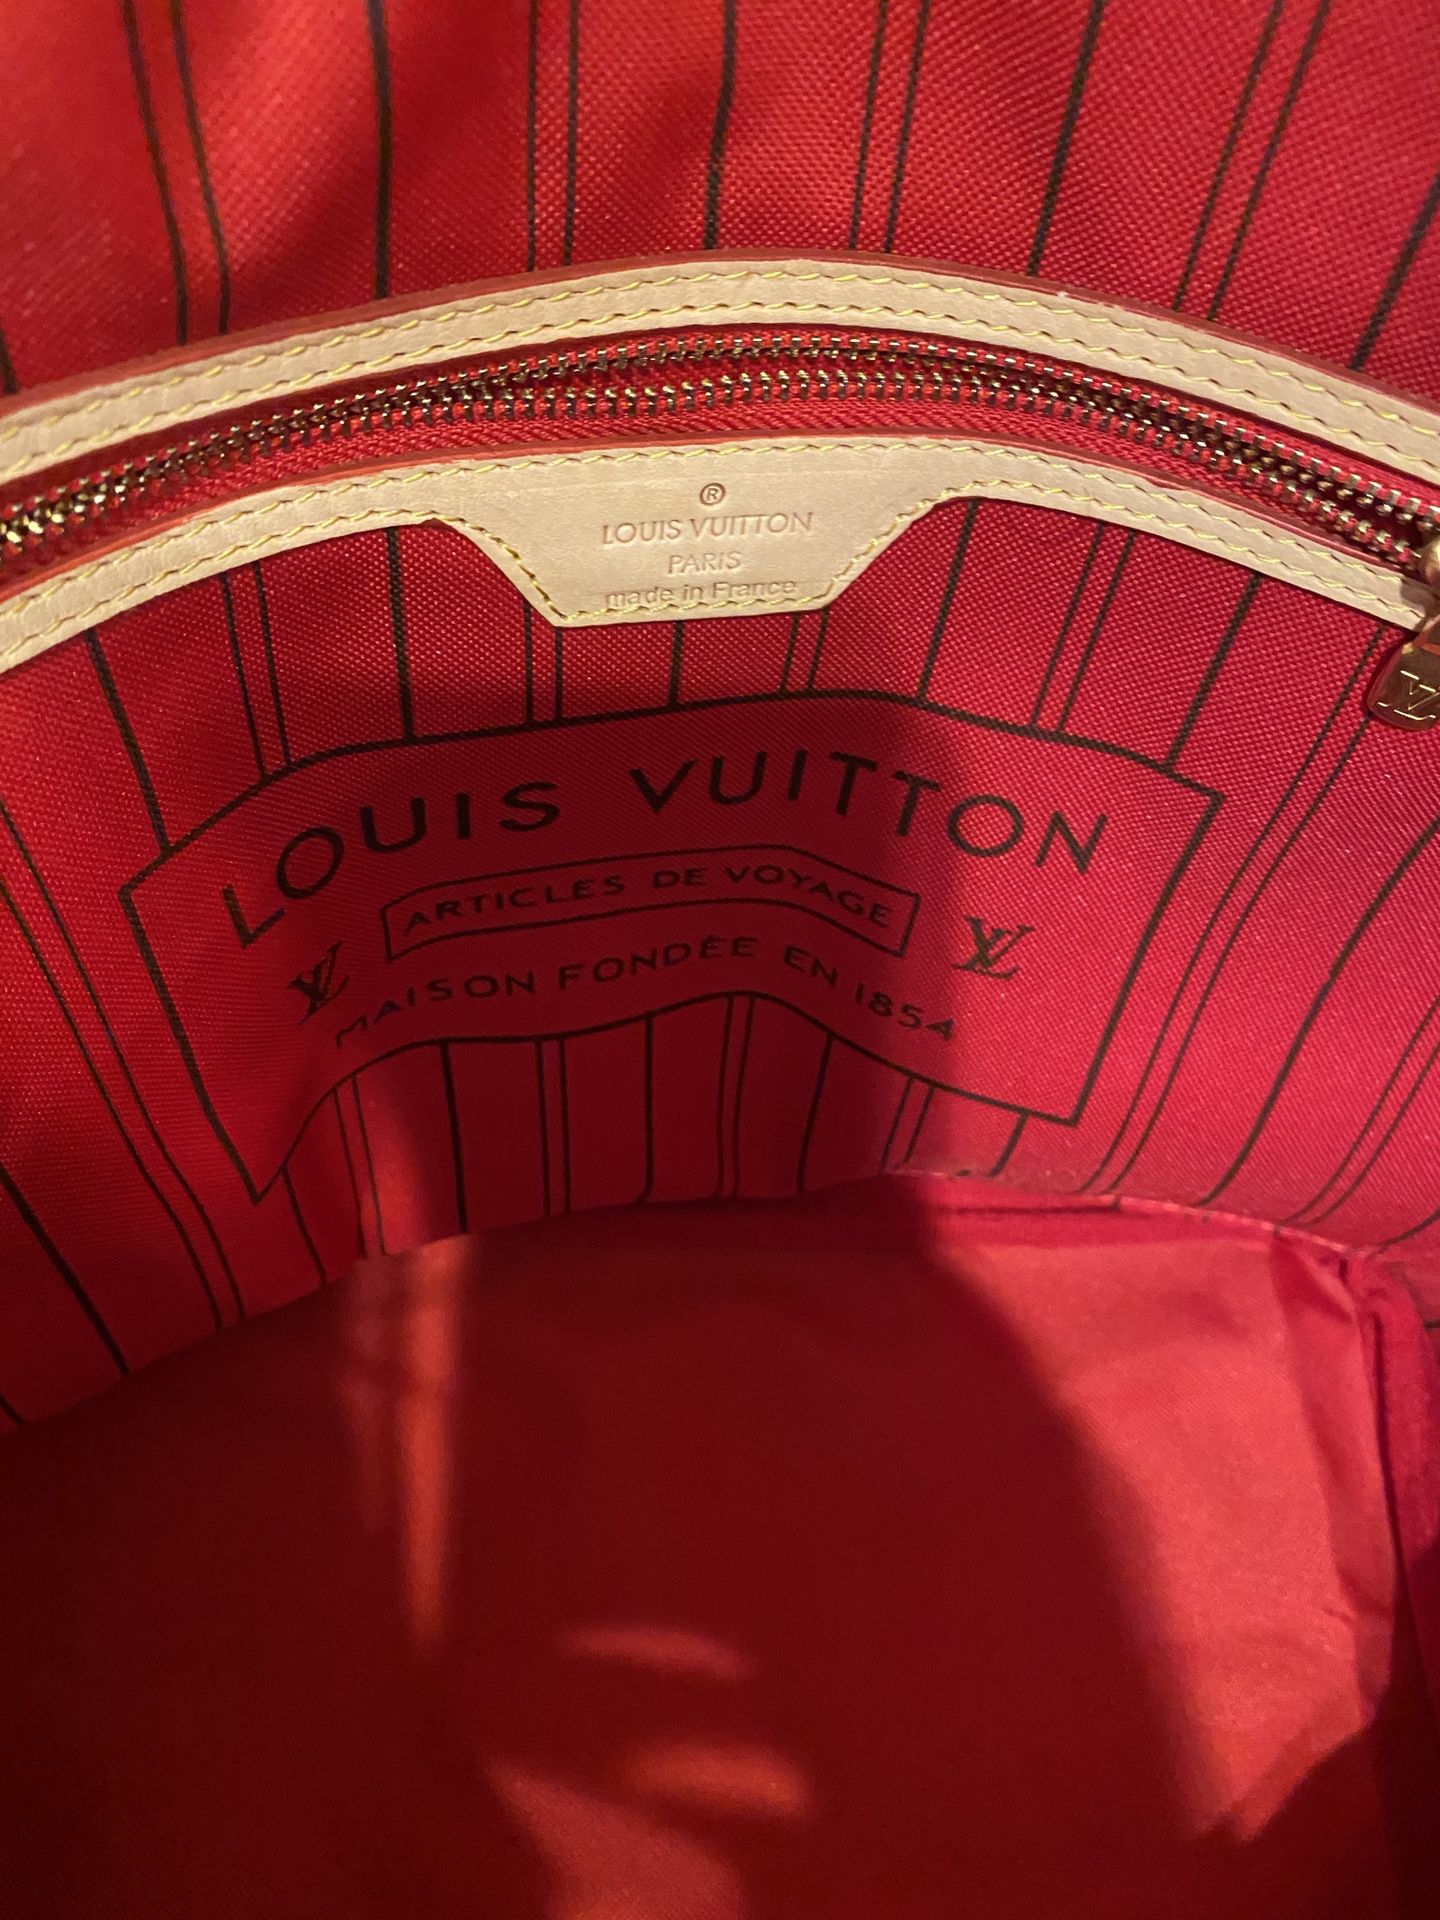 Louis Vuitton Speedy 20 for Sale in San Diego, CA - OfferUp